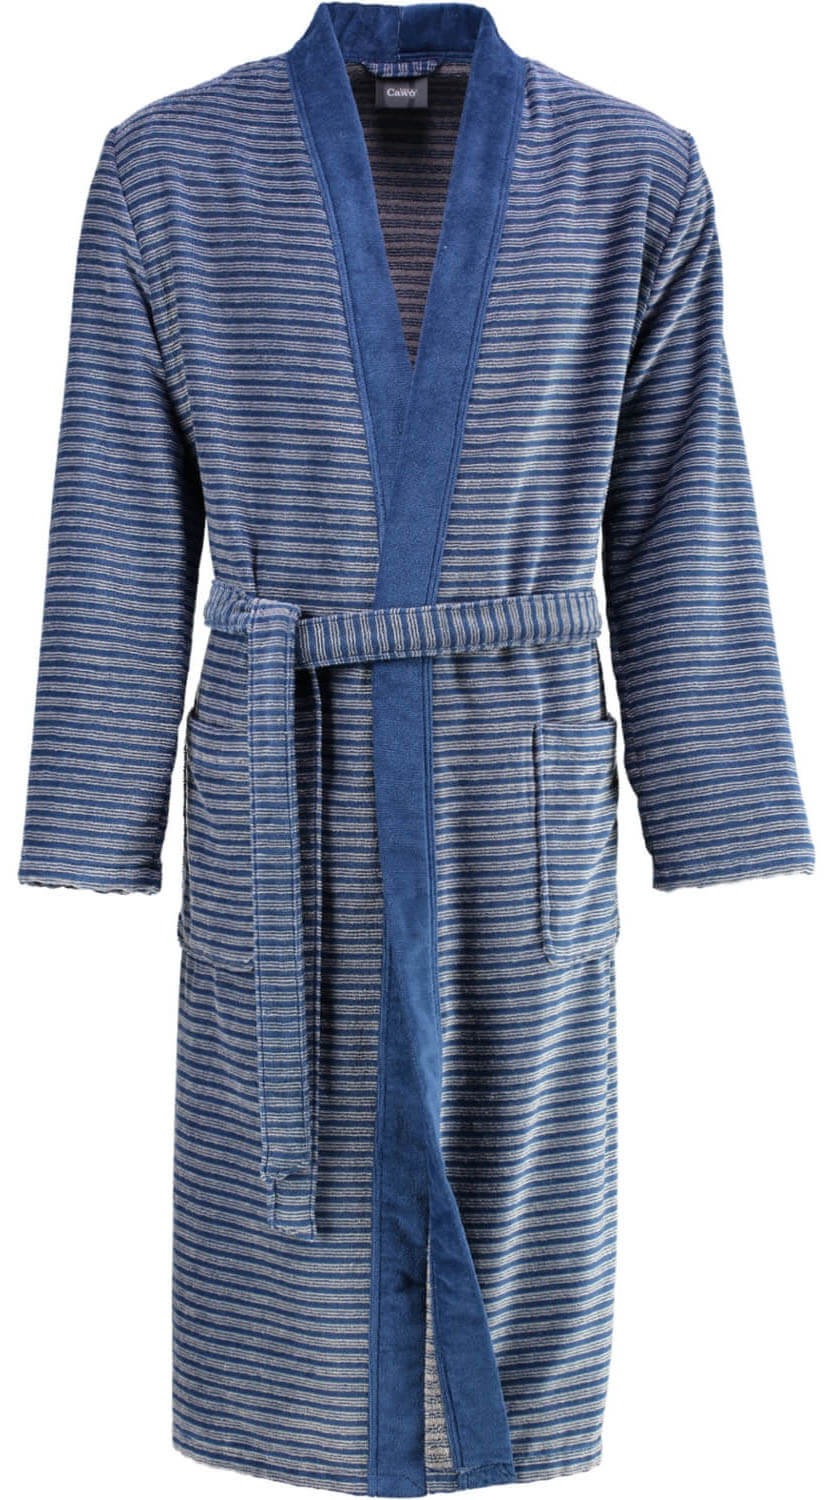 Мужской халат Cawo Kimono Blau (2844) ☞ Размер: 54